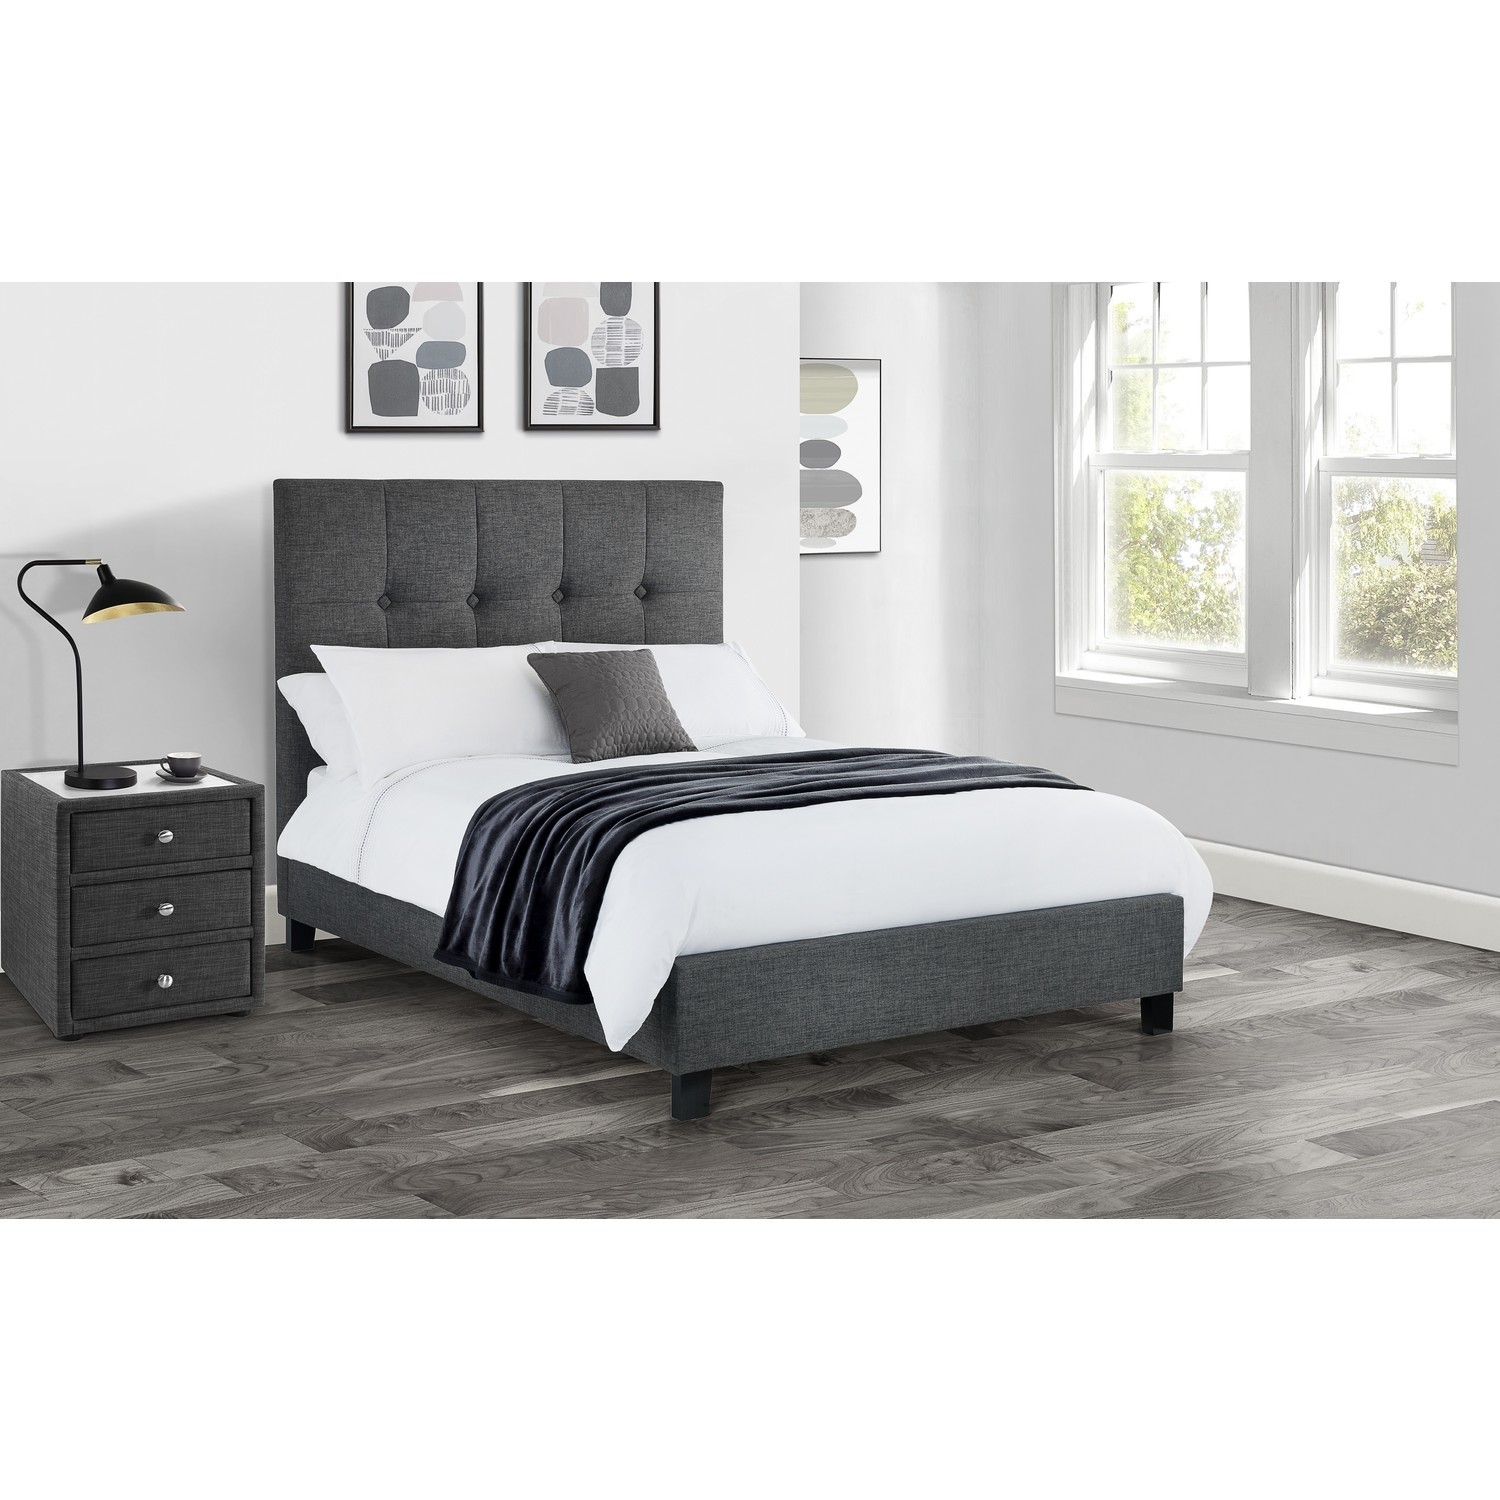 Dark Grey Super King Size Bed Frame, Extra High King Size Bed Frame